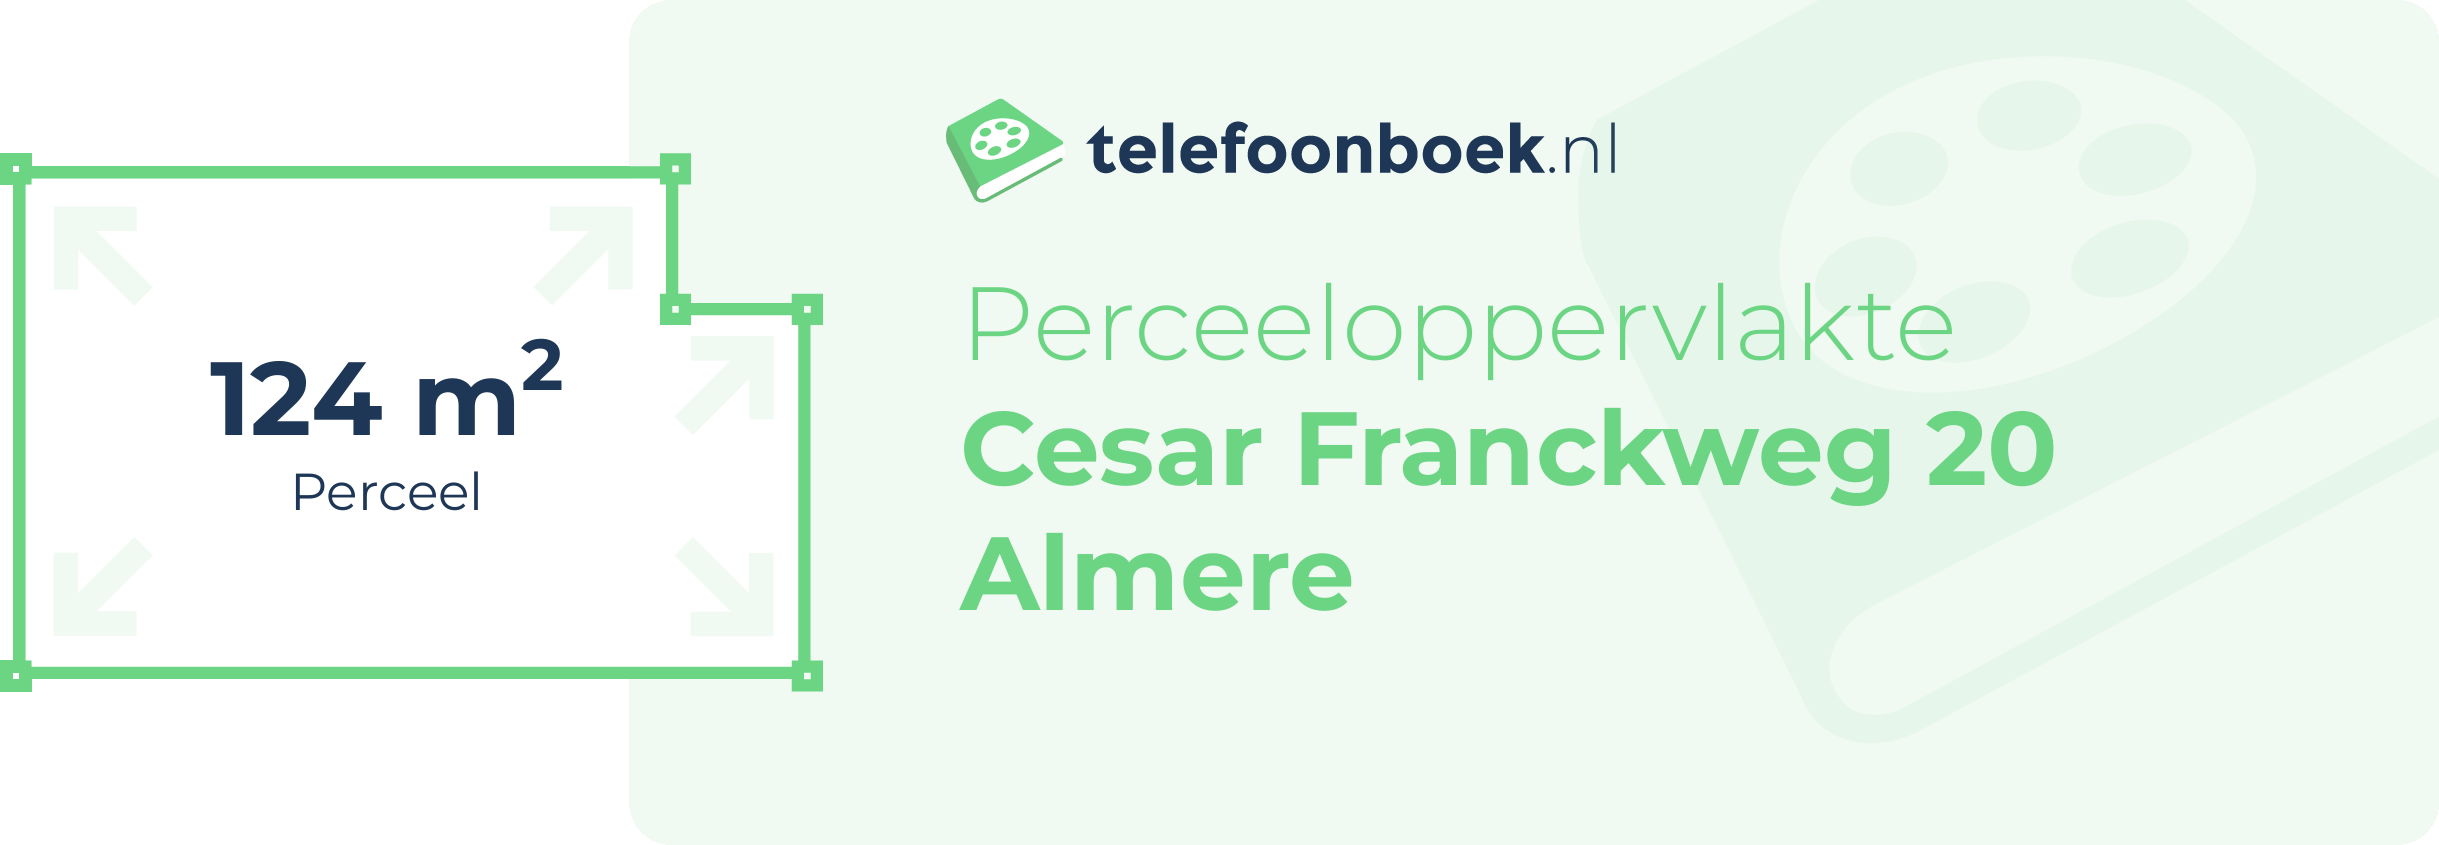 Perceeloppervlakte Cesar Franckweg 20 Almere